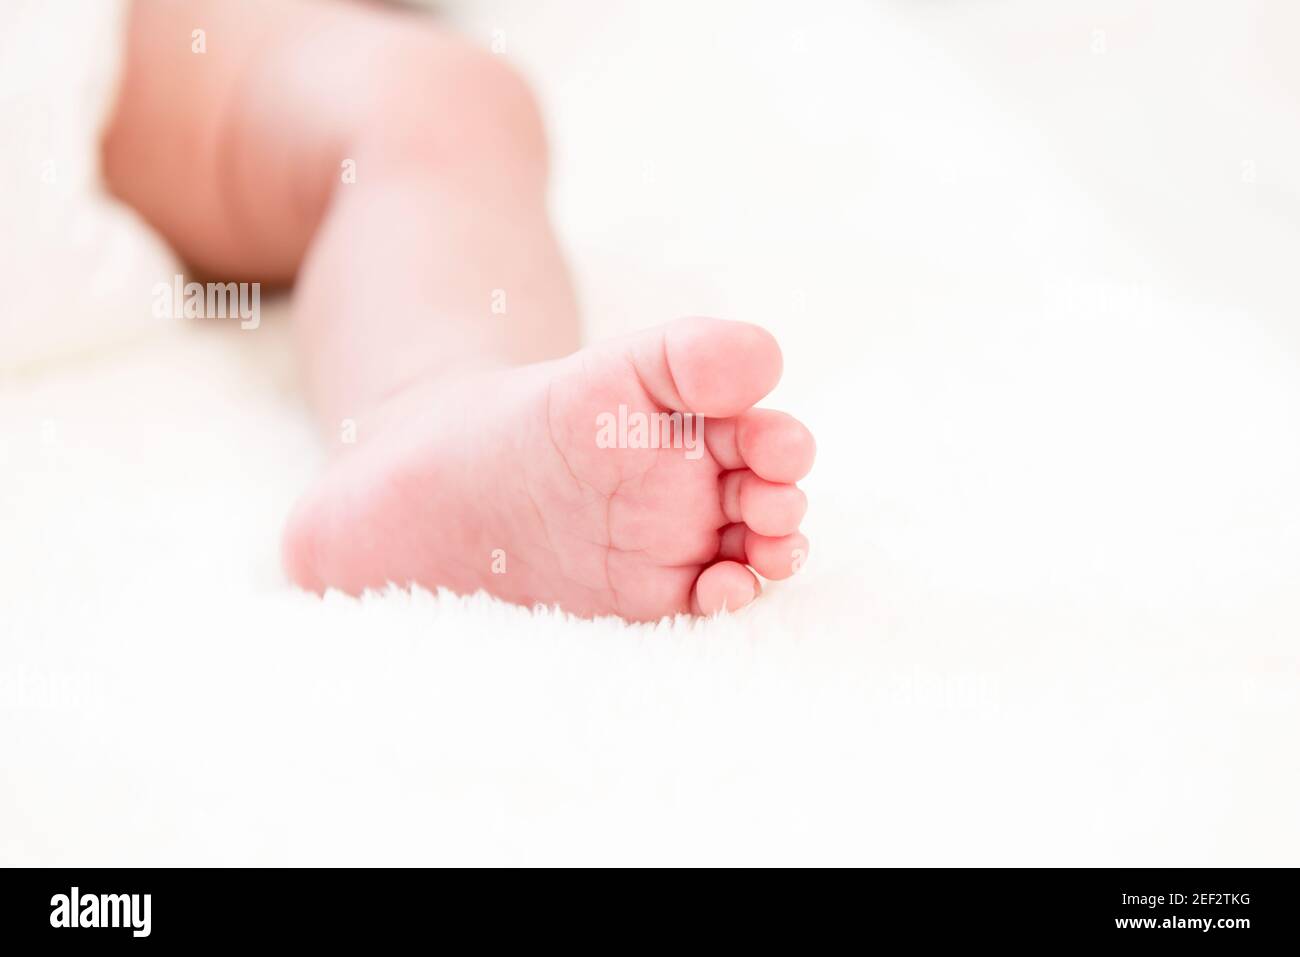 Kleiner kleiner kleiner Fuß des Neugeborenen auf weicher weißer Wolle Flusenblatt Stockfoto